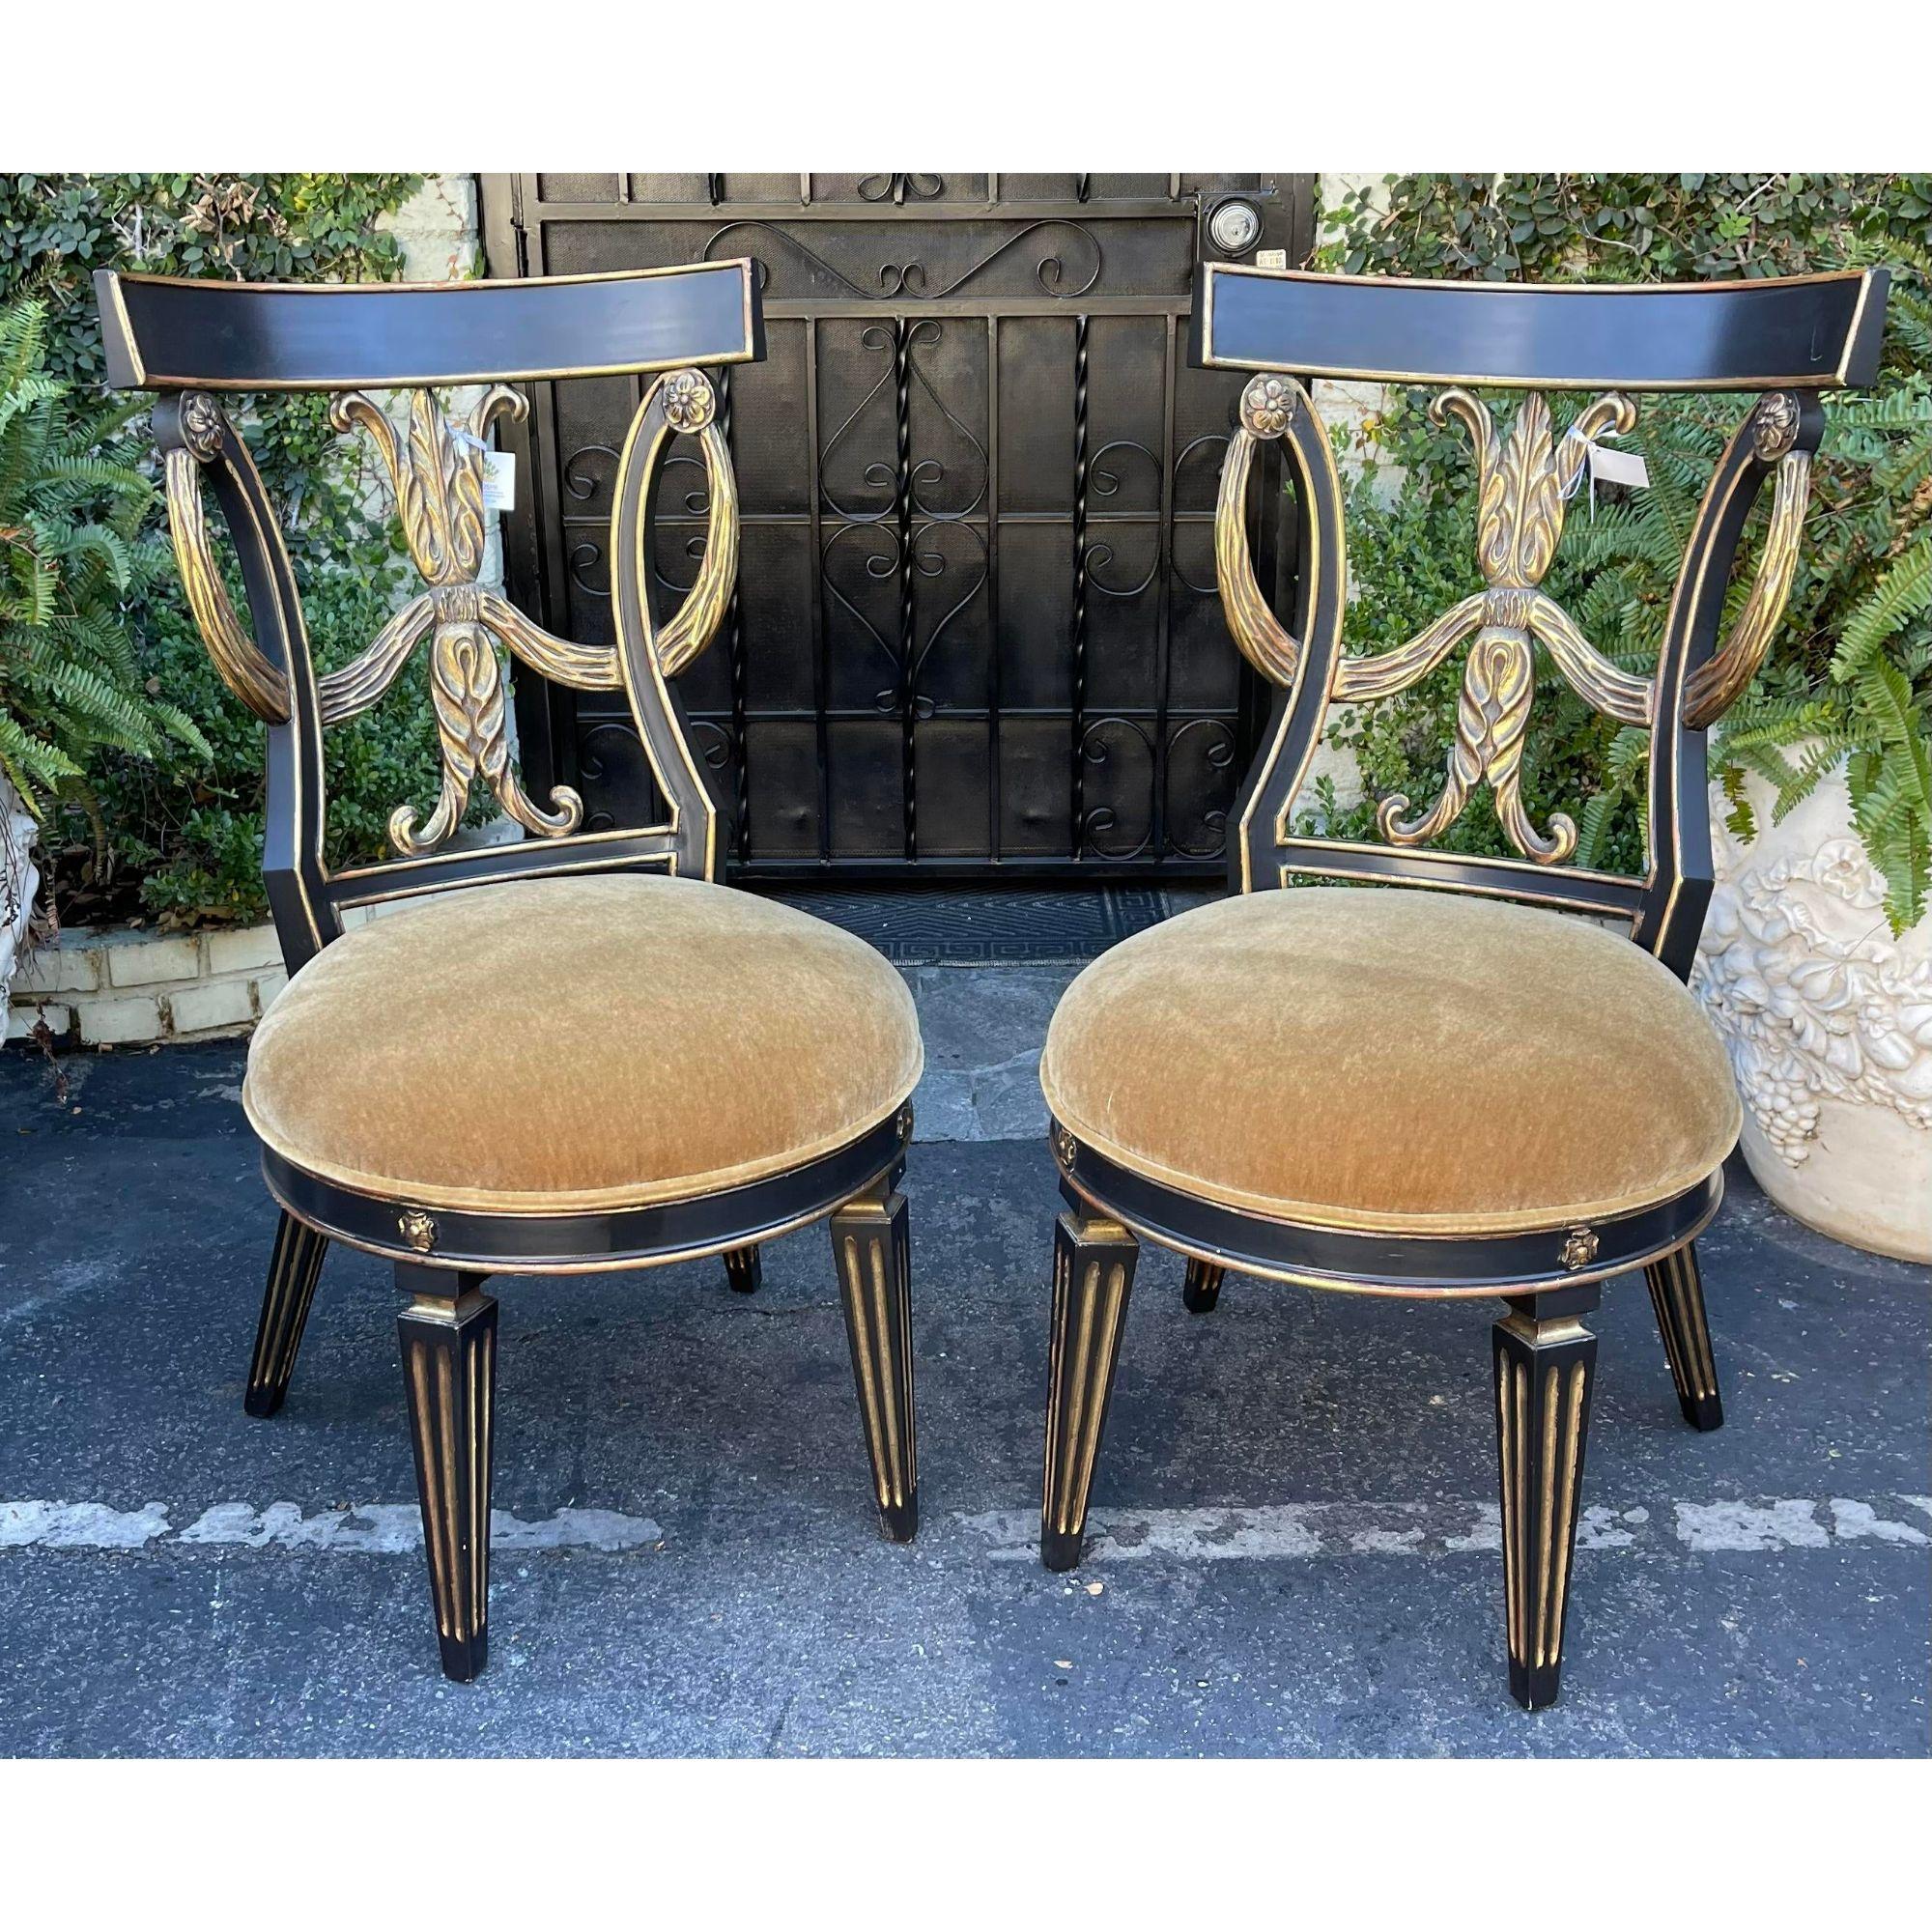 Paire de chaises de style Regency en bois doré et mohair par Randy Esada Designs pour Prospr. Ils sont dotés de sièges en mohair épais et pelucheux et d'élégants cadres en bois doré ébénisé. Avant et arrière dorés.
Vendu par paire. Deux paires